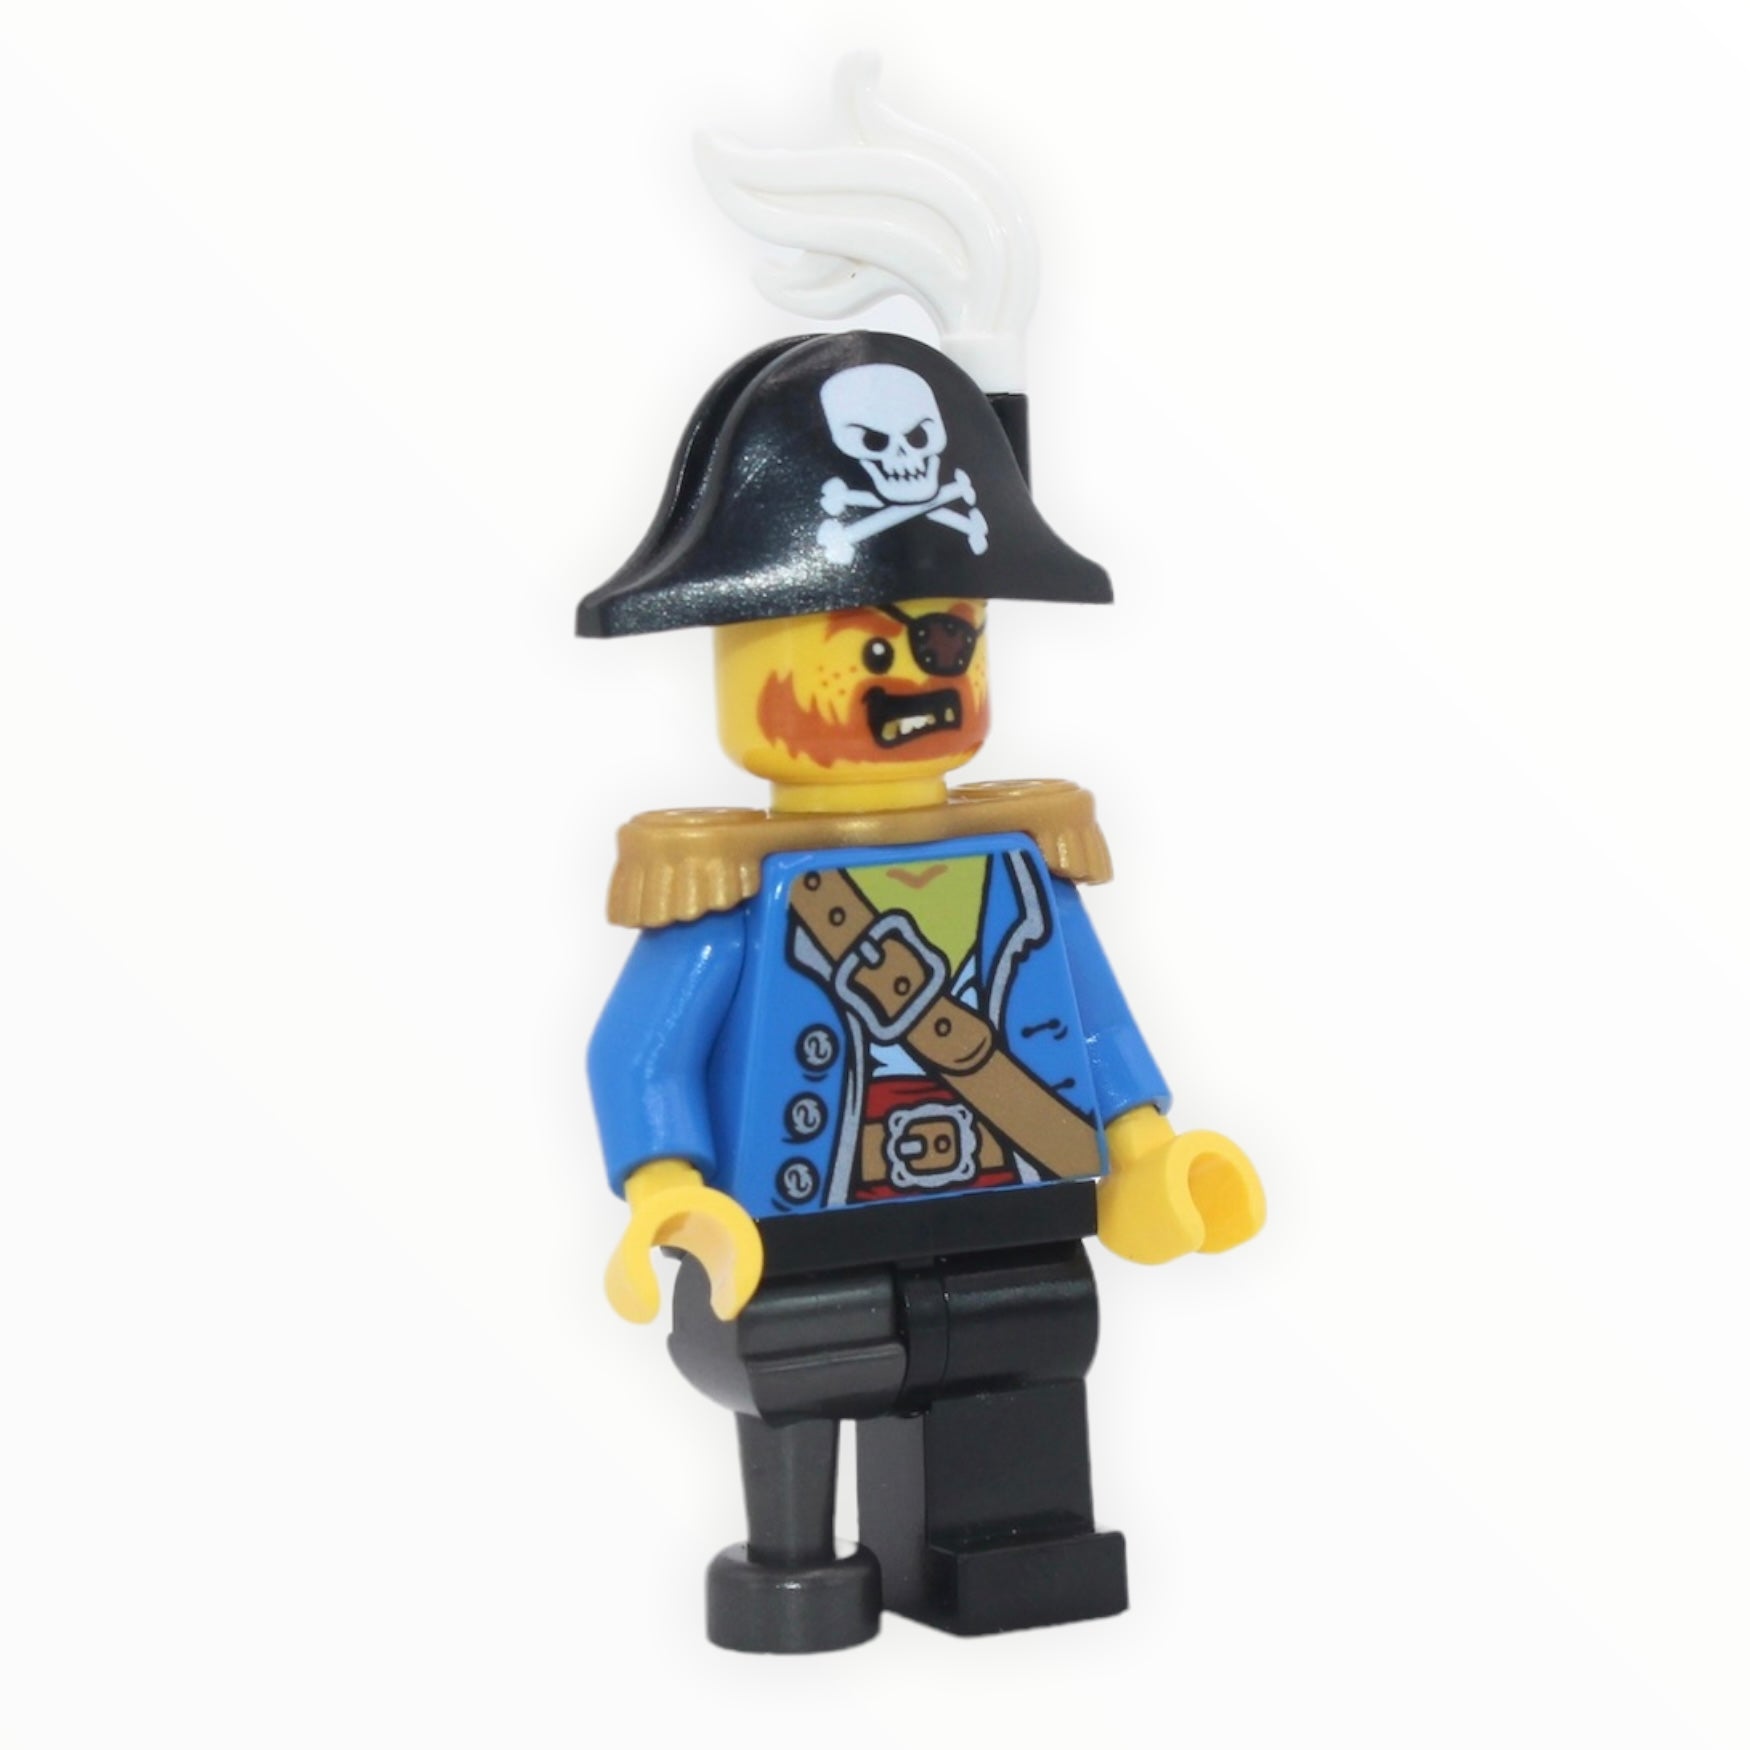 Pirate Captain (bicorne with skull, white plume, gold epaulettes, pearl dark gray peg leg)